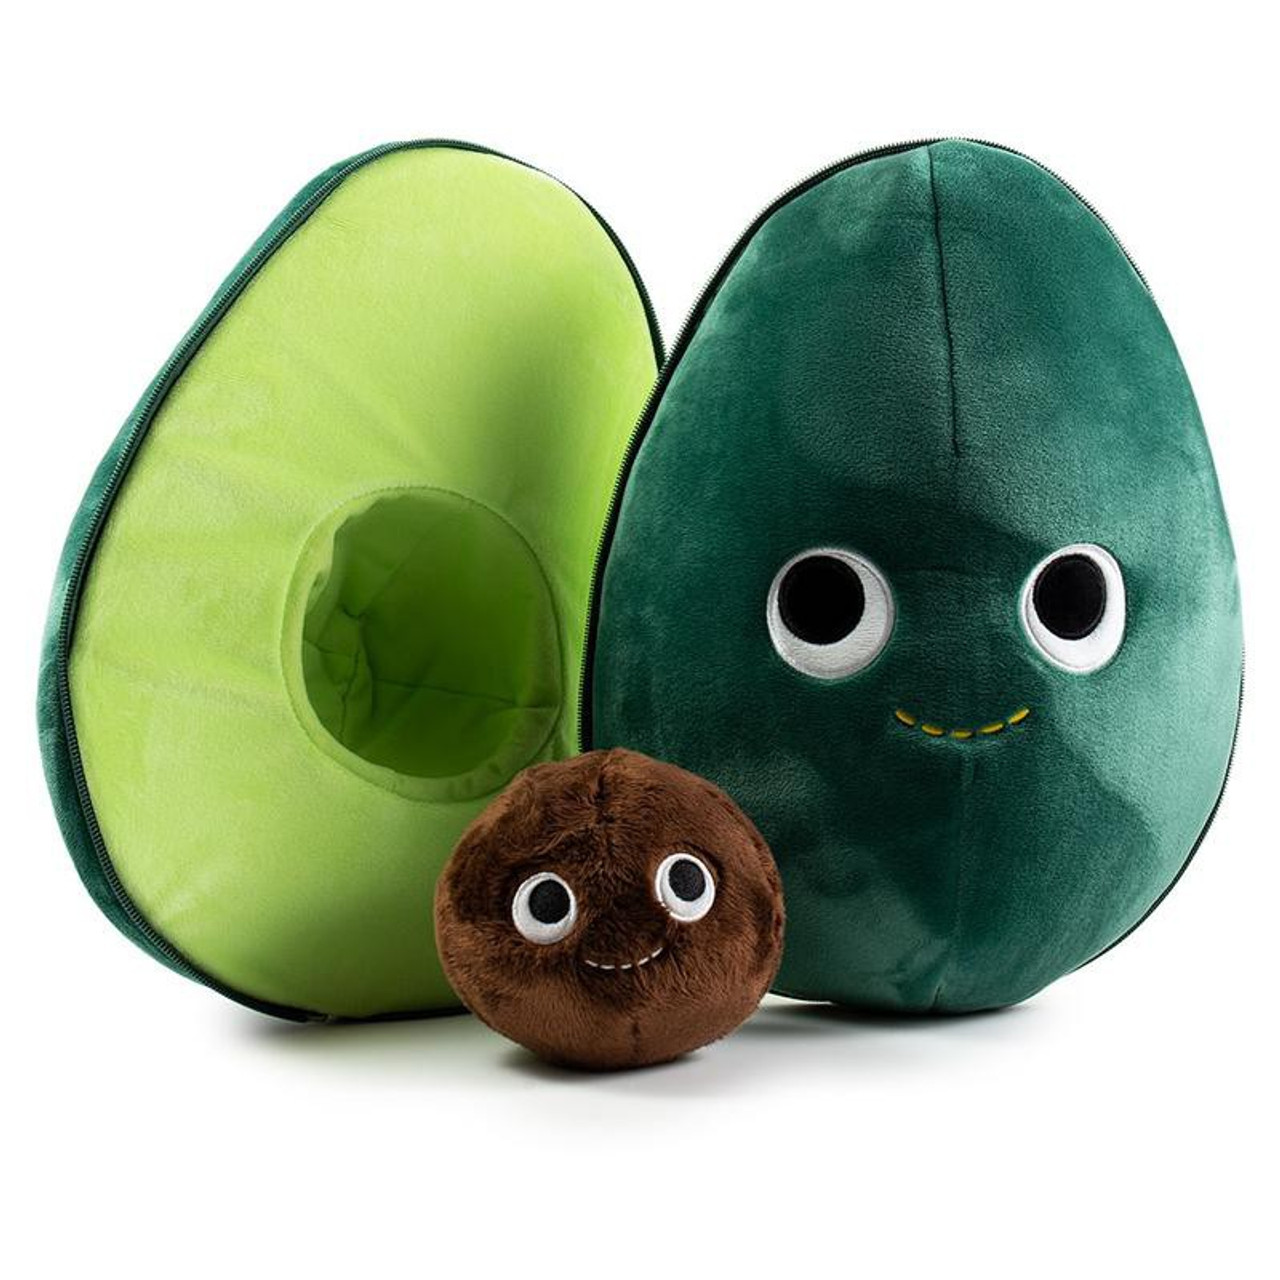 giant avocado plush